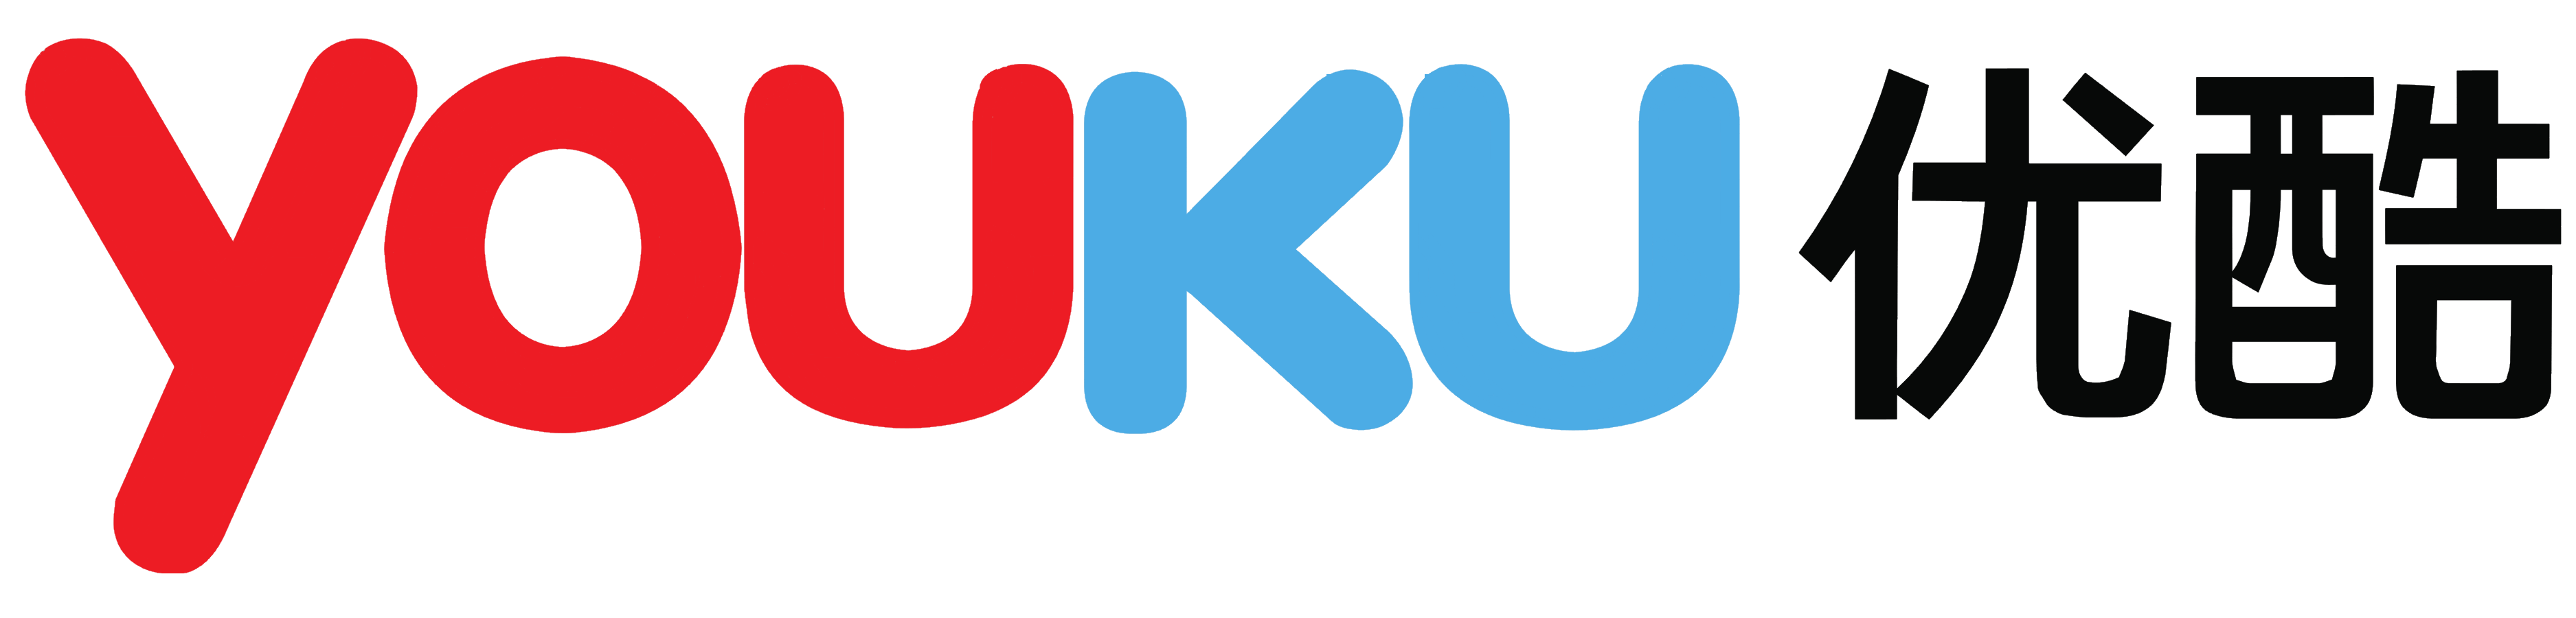 Youku (youku.com) logo, logotype